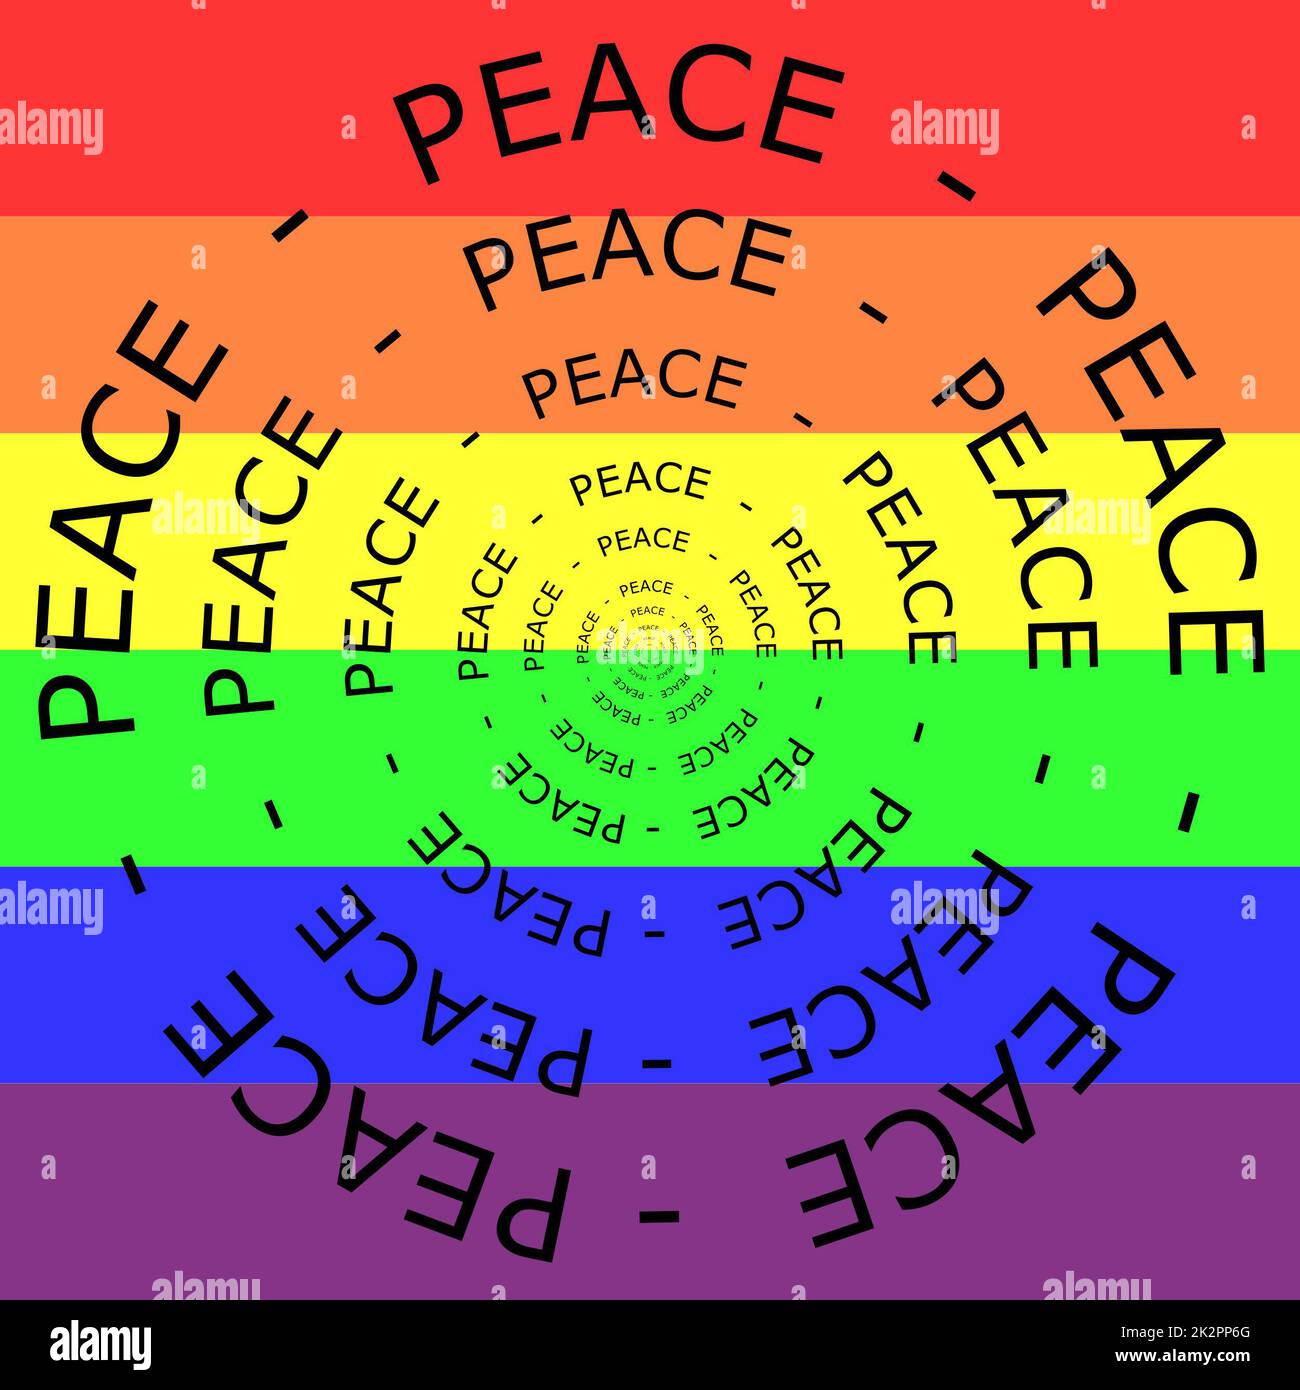 Peace Wordwolke auf Regenbogenhintergrund - Illustration Stockfoto